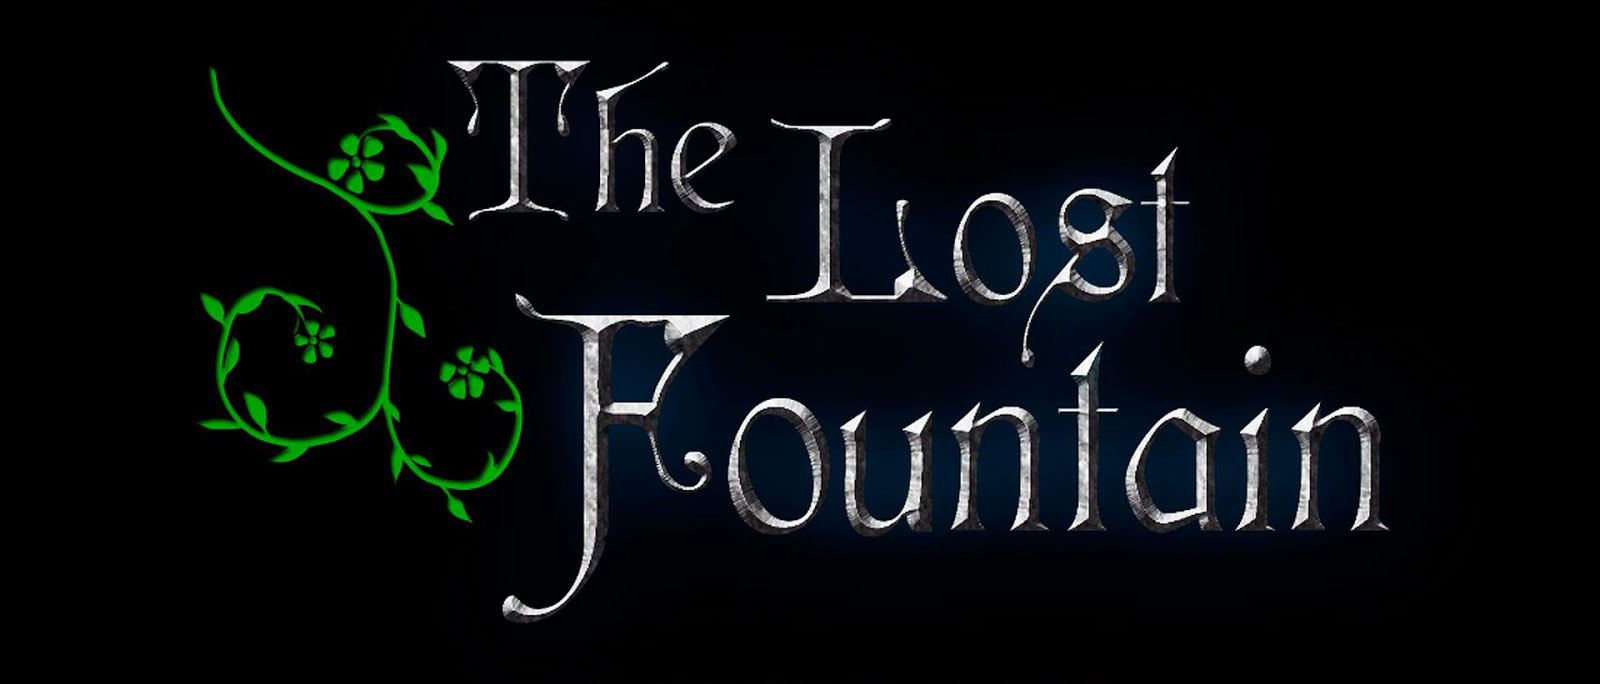 دانلود بازی The Lost Fountain v1.01 برای اندروید + فایل دیتا بازی